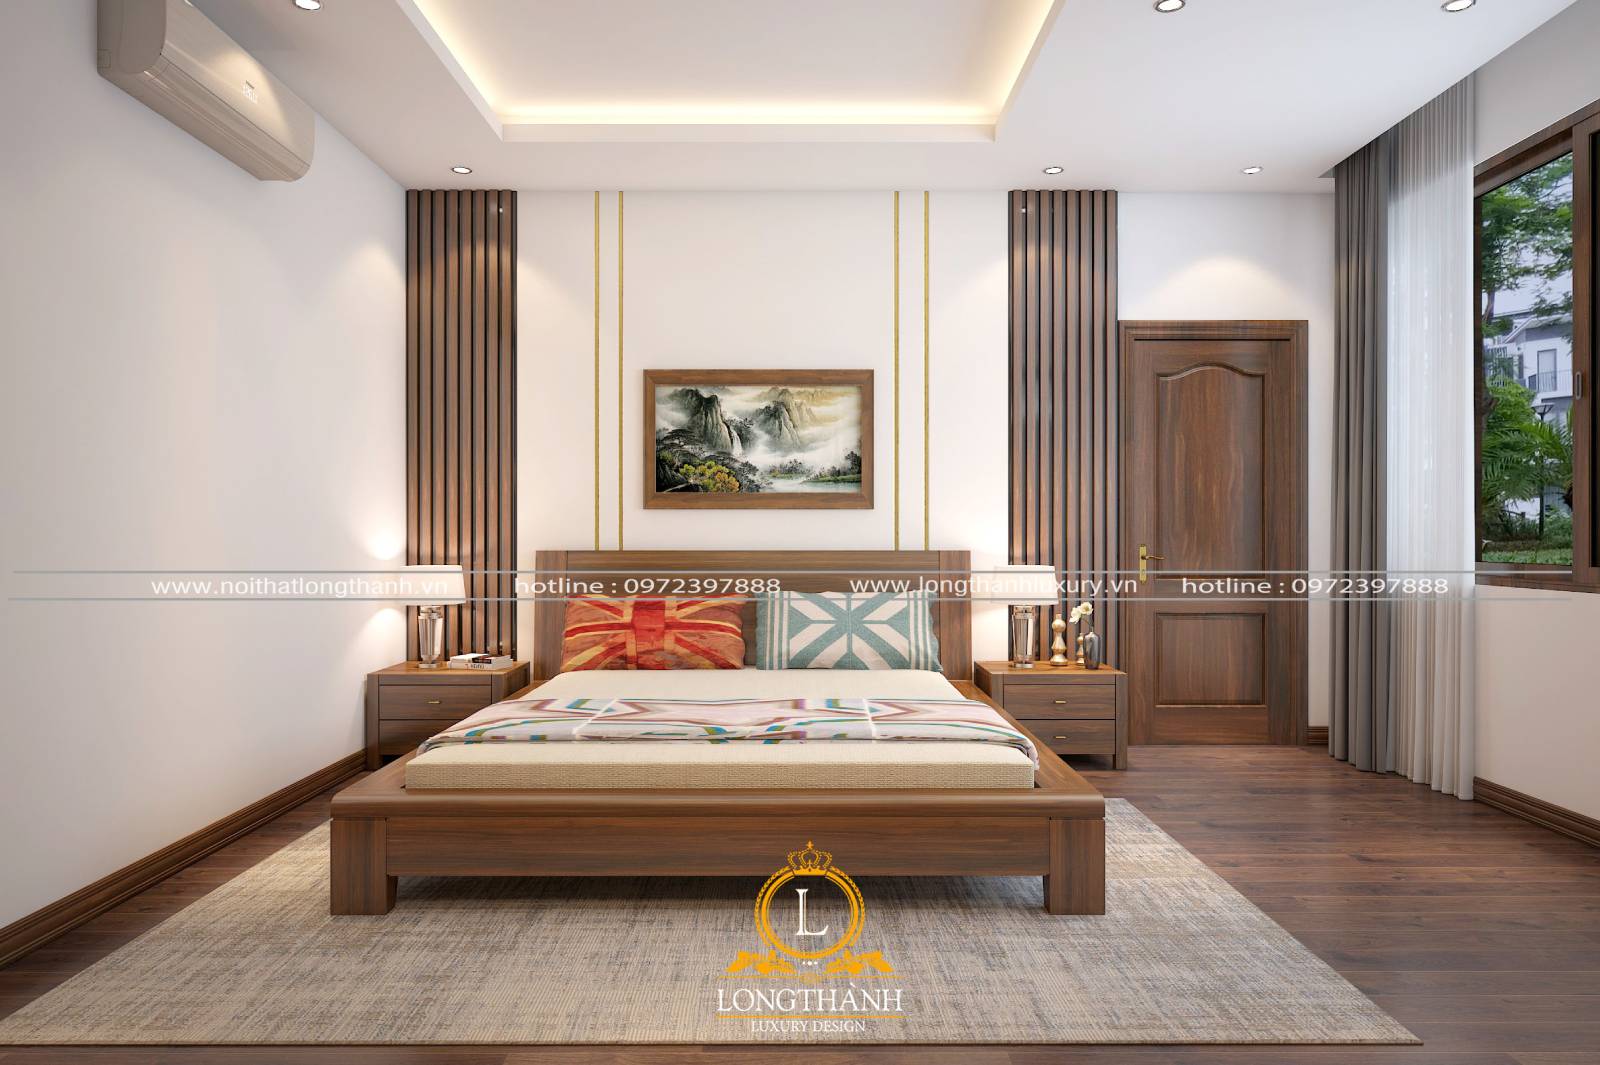 Mẫu giường ngủ gỗ Gõ đỏ hiện đại đơn giản phù hợp với không gian chung cư, nhà phố